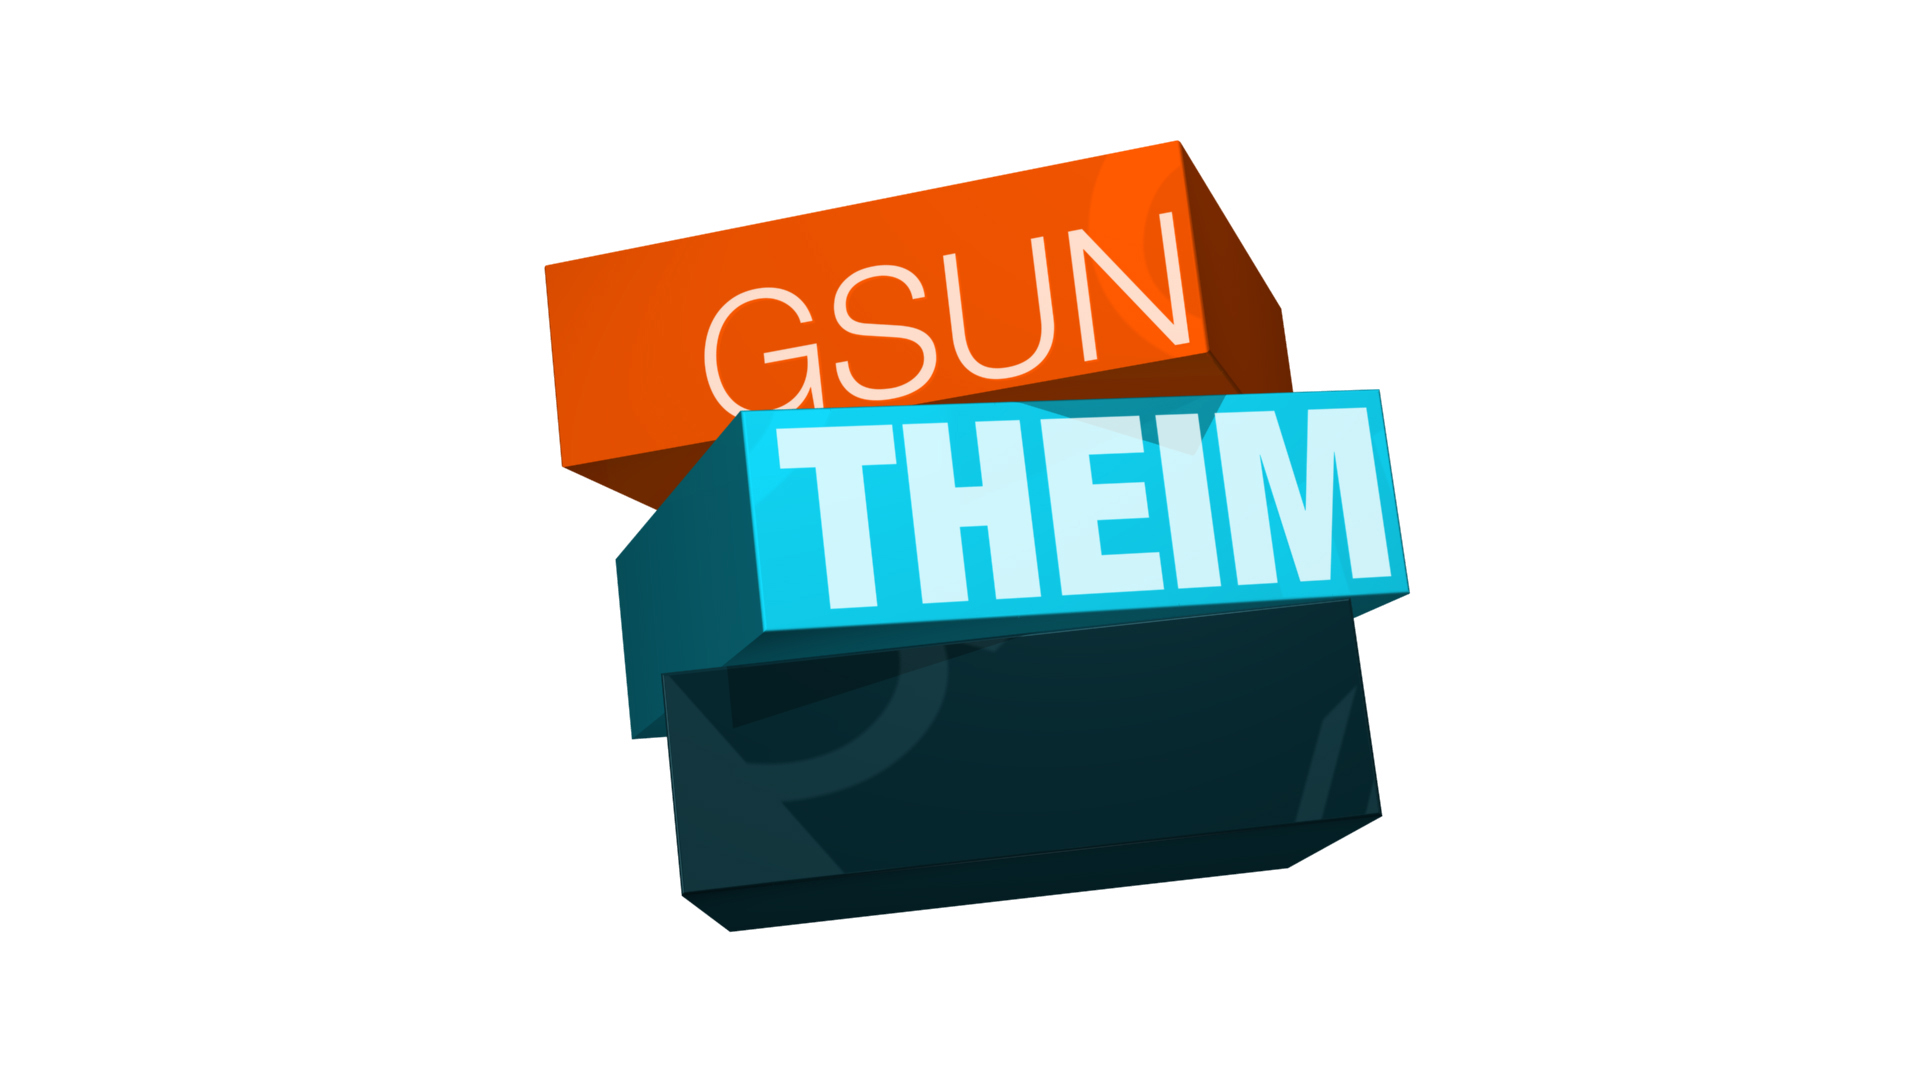 GsunTheim - crédit FTV